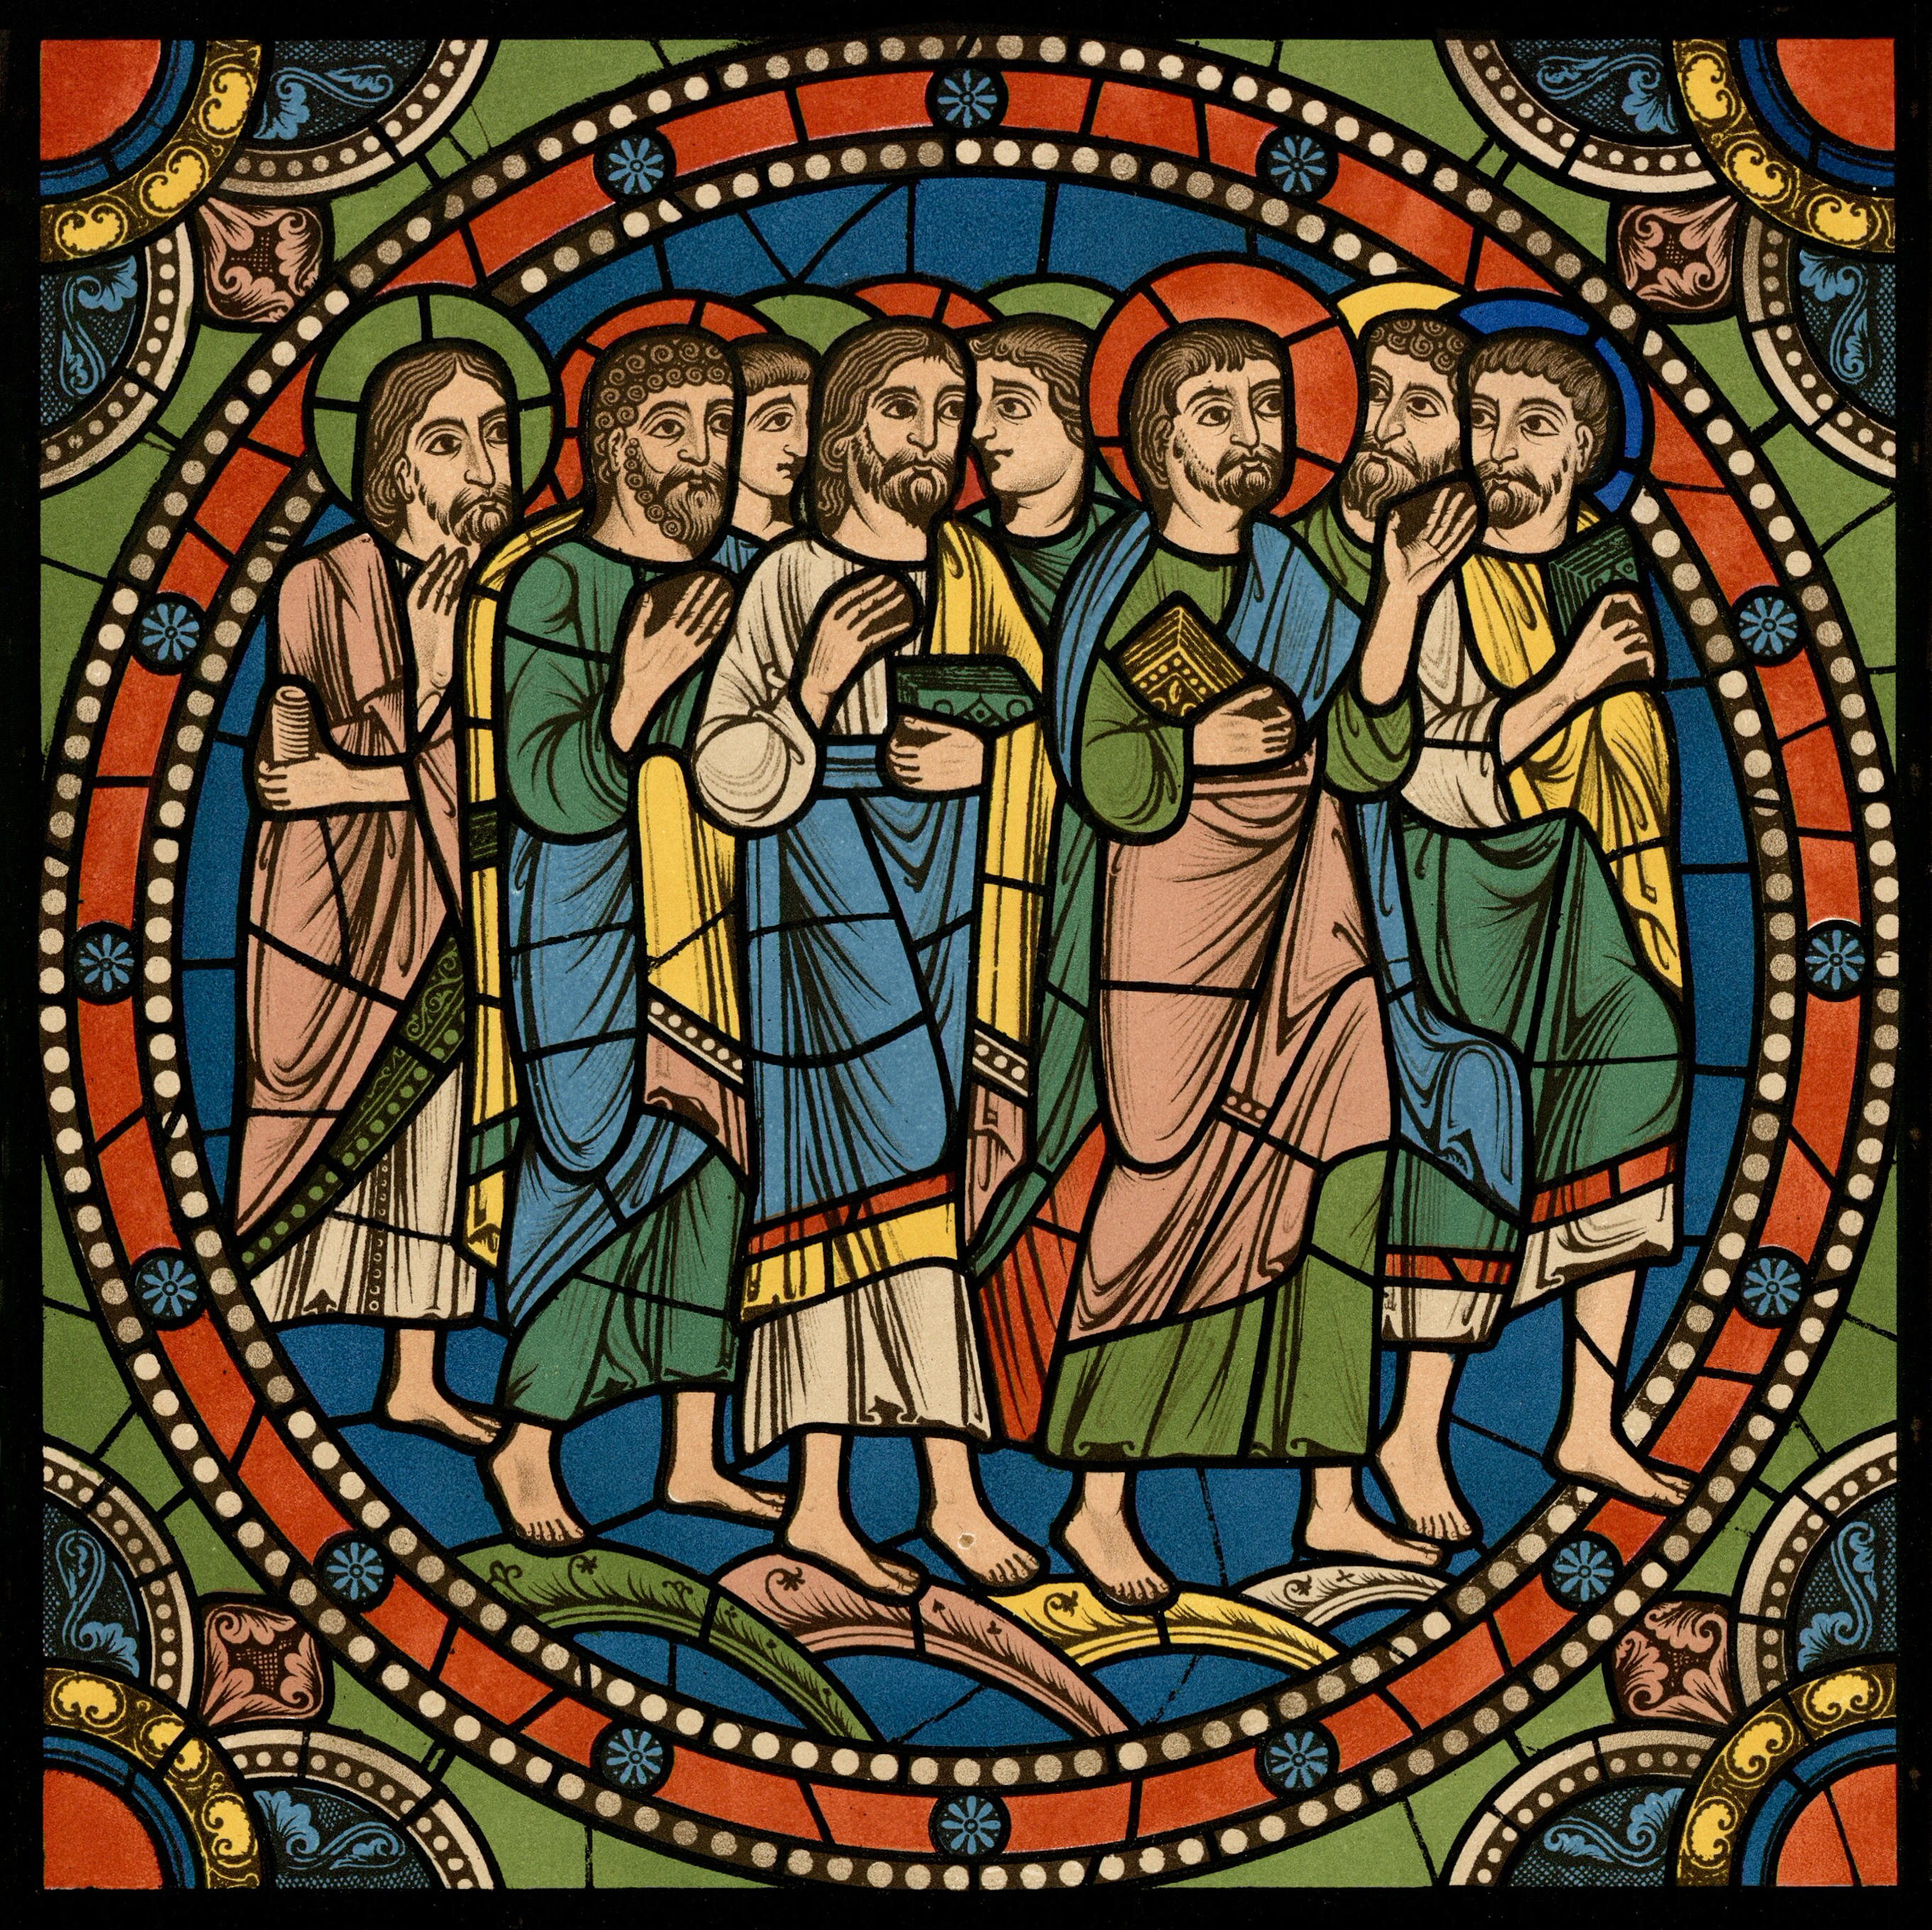 Chartres VITRAIL DE LA VIE DE JÉSUS-CHRIST Motiv 22 Les Rameaux - groupe d’apôtres suivant Notre-Seigneur